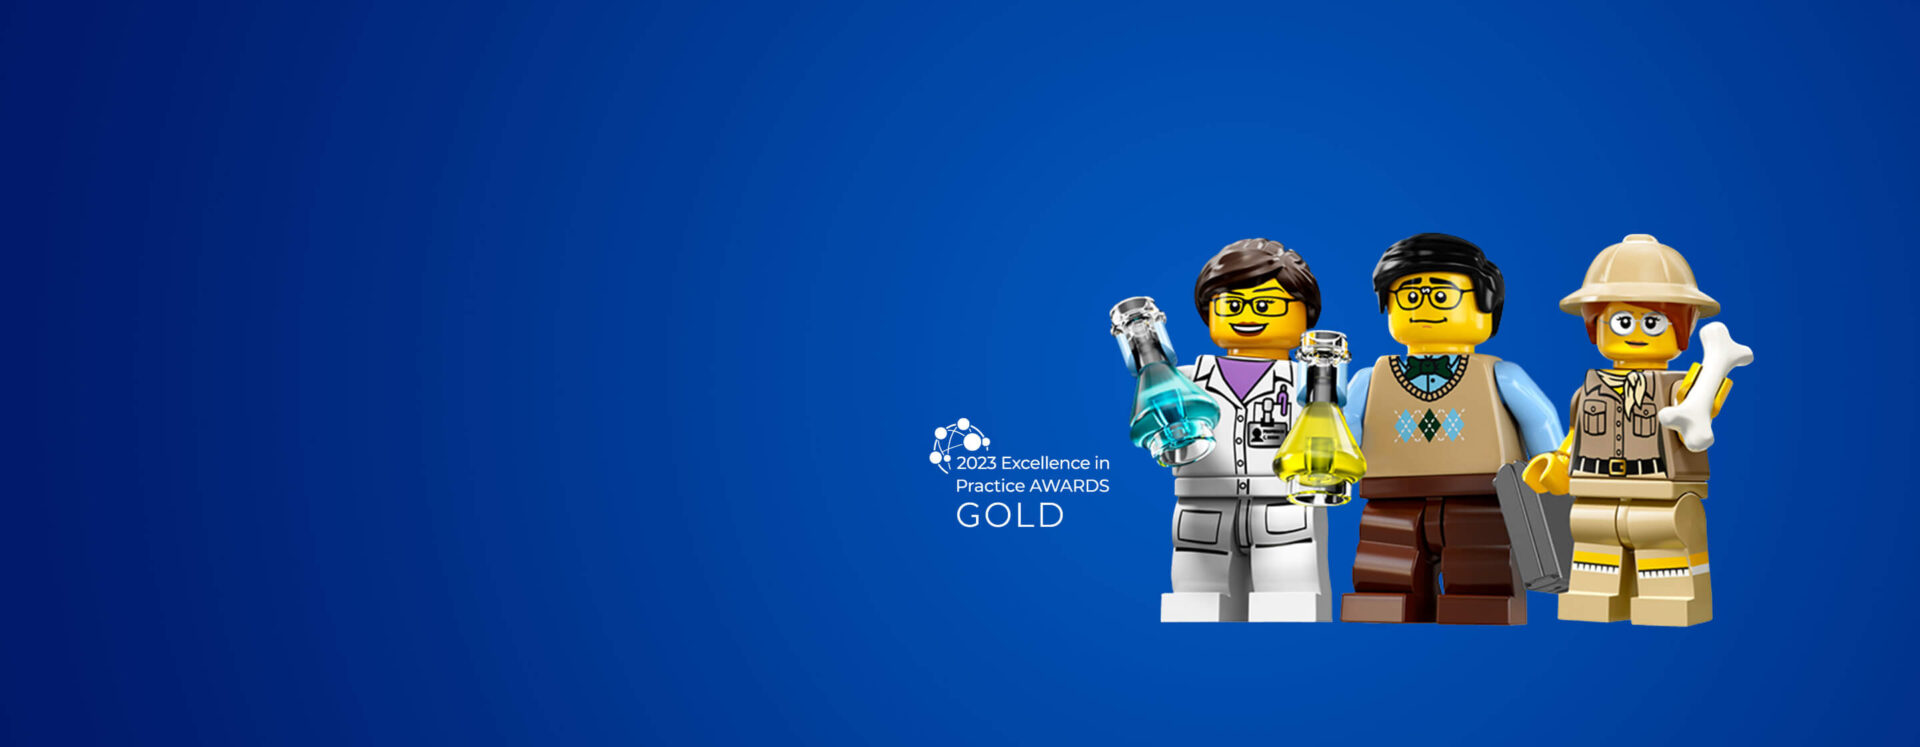 EFMD Case LEGO Group home page banner